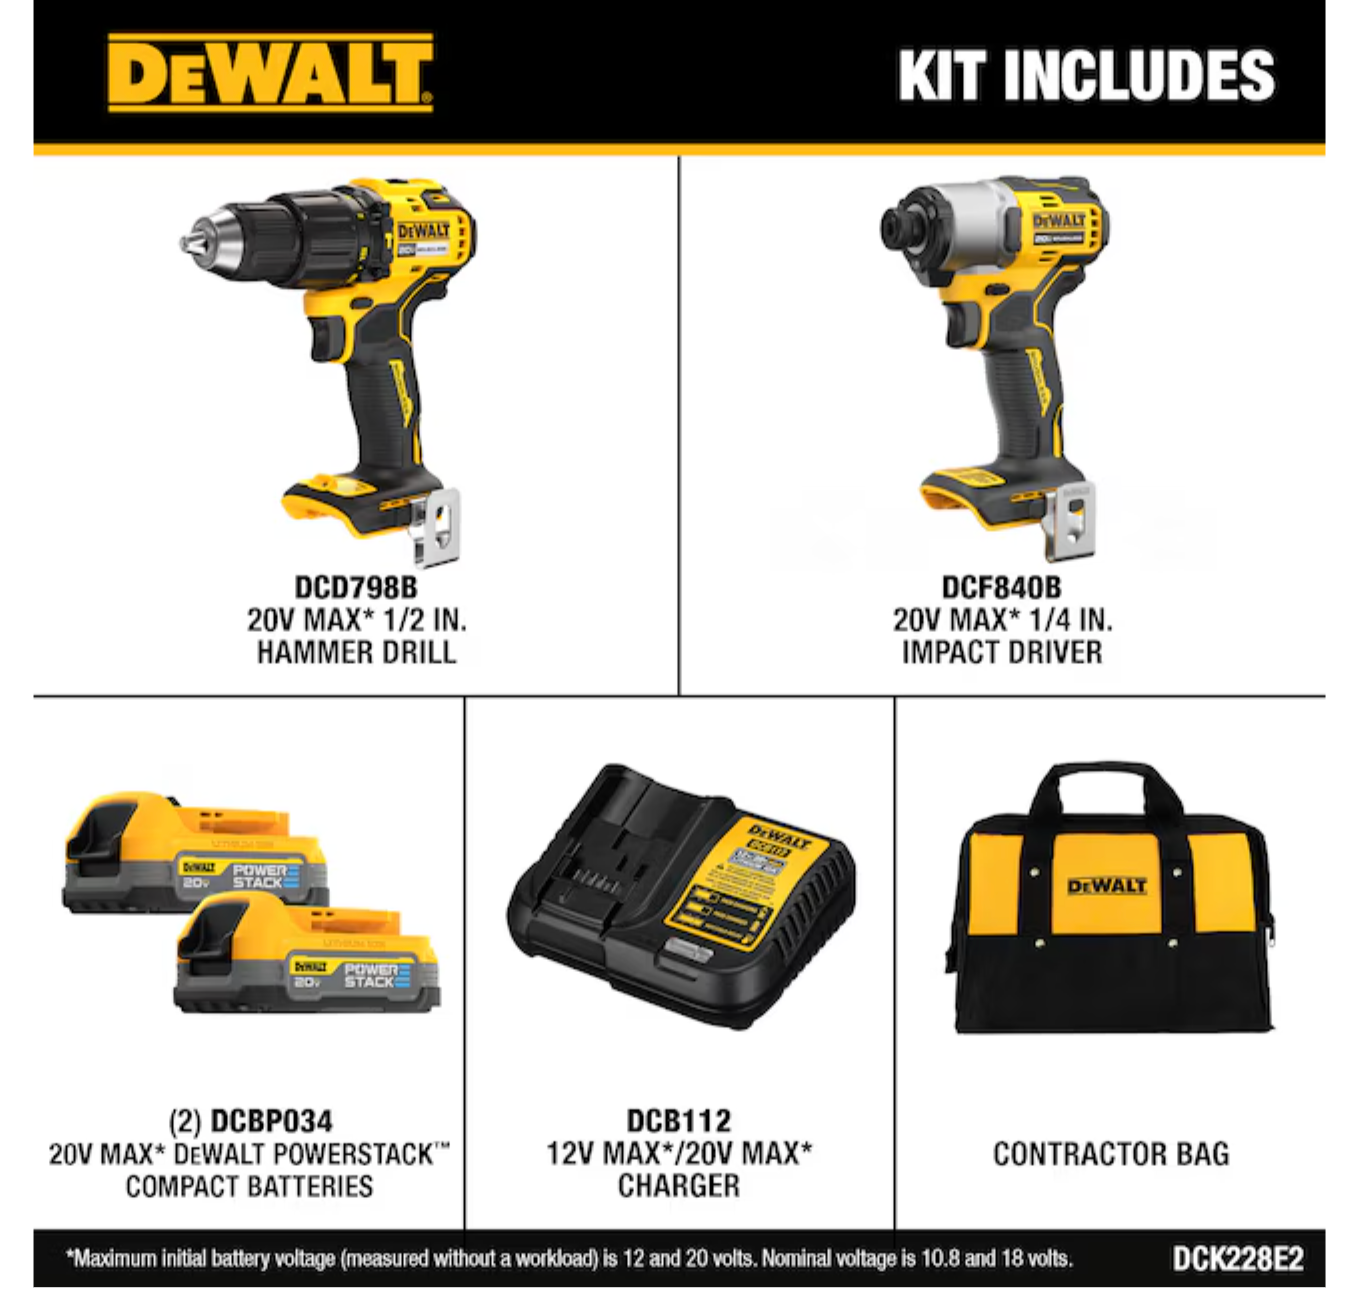 DEWALT 20V MAX 2-Tool Brushless Hammer Drill Power Tool Combo Kit